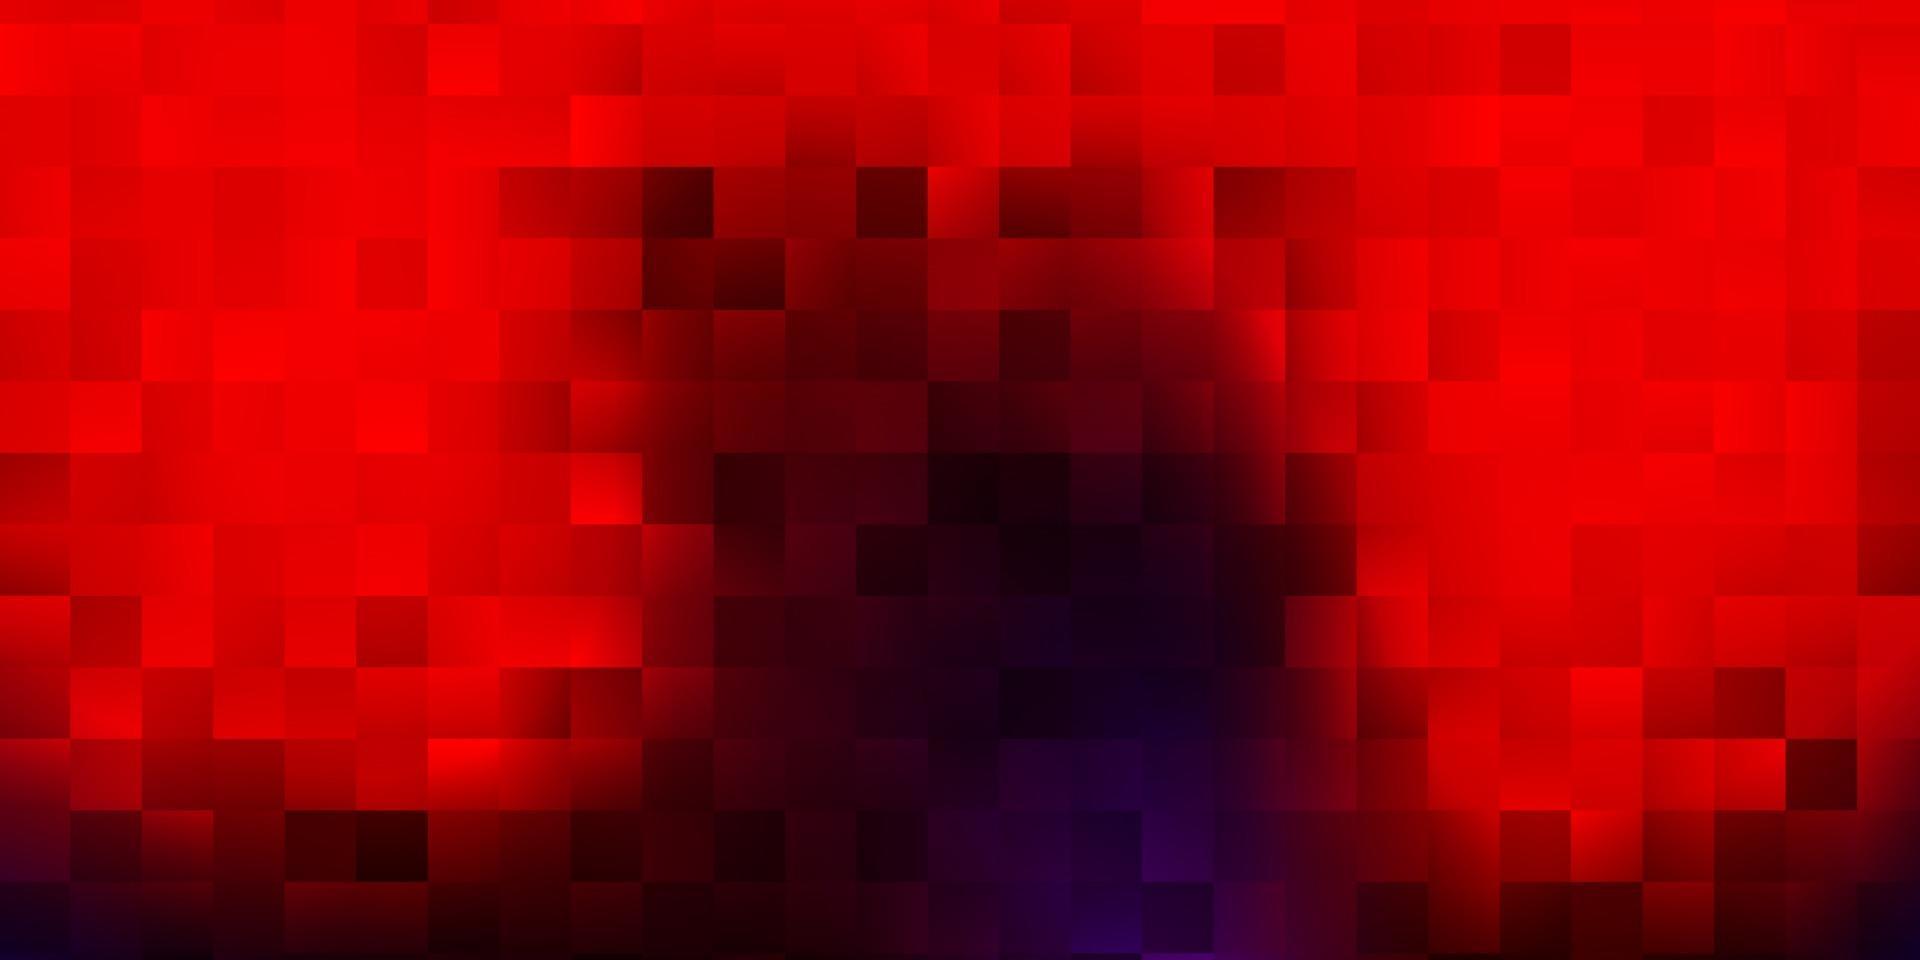 modelo de vetor azul e vermelho escuro com formas abstratas.